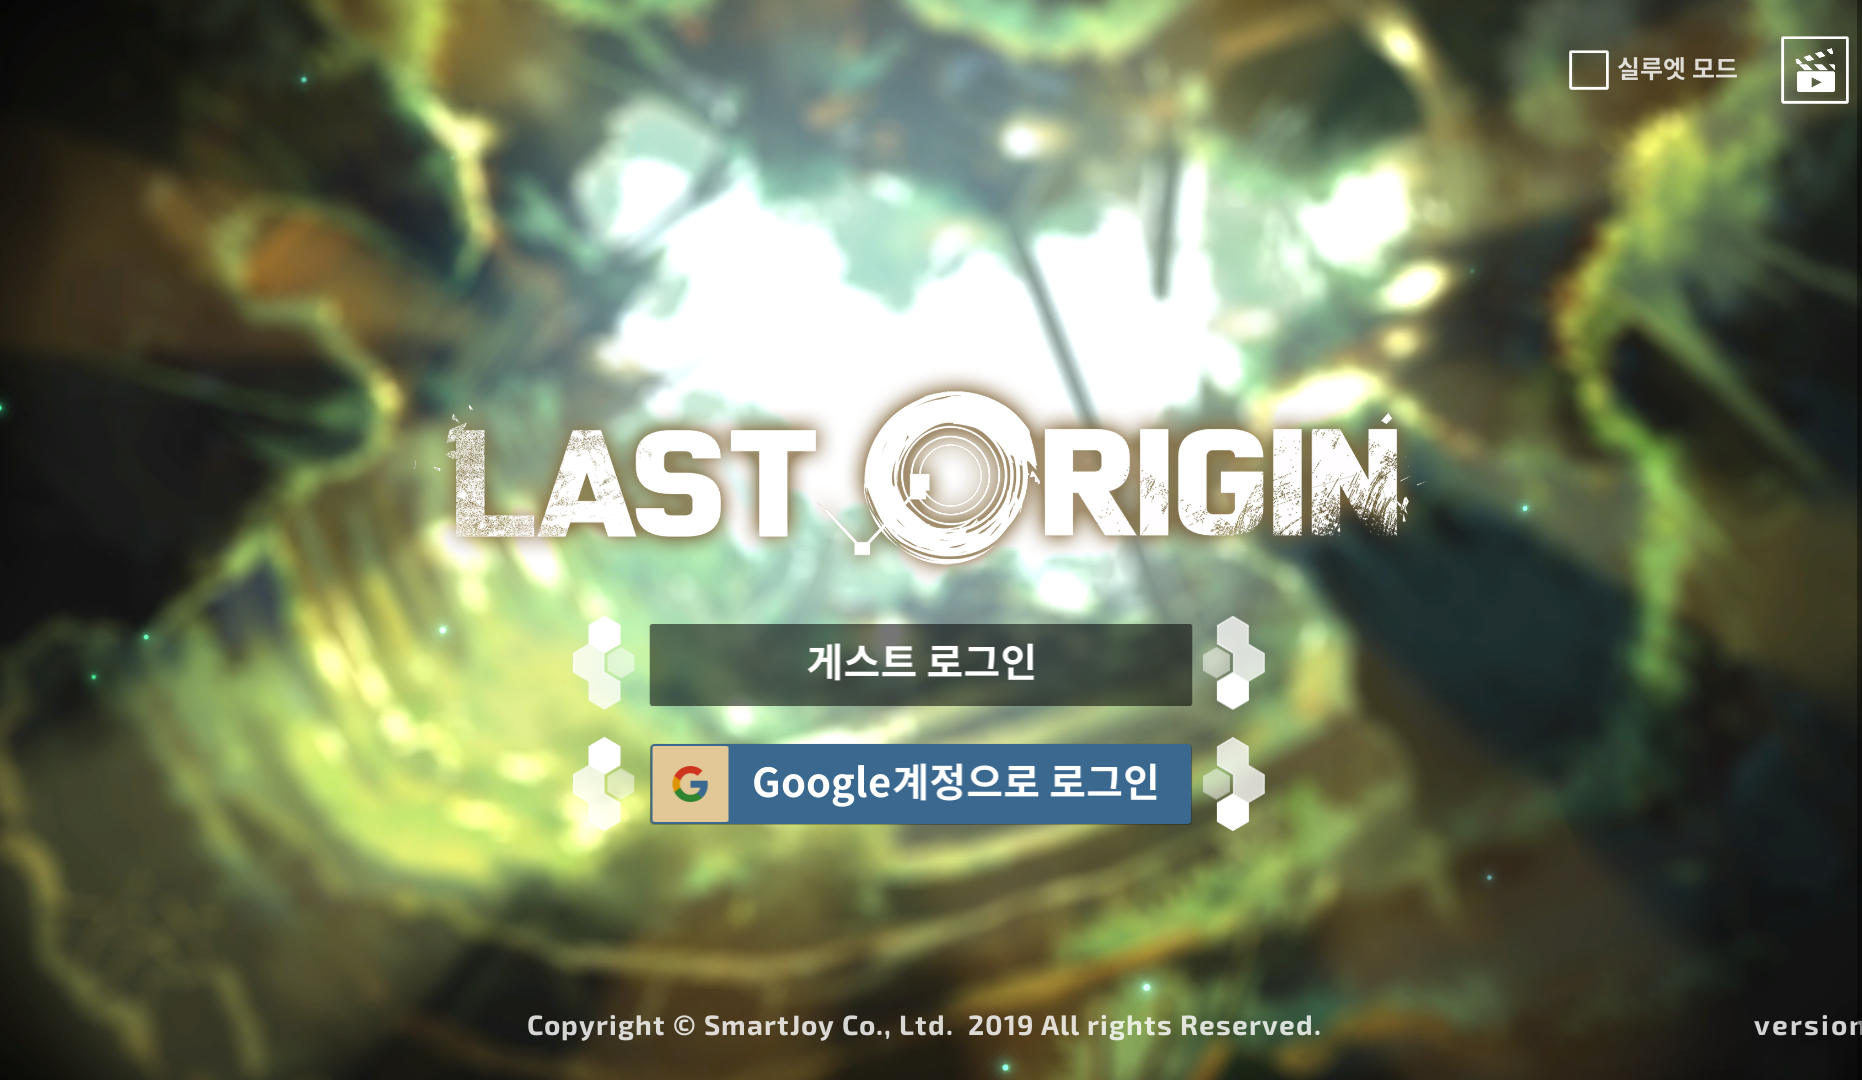 last origin安利向